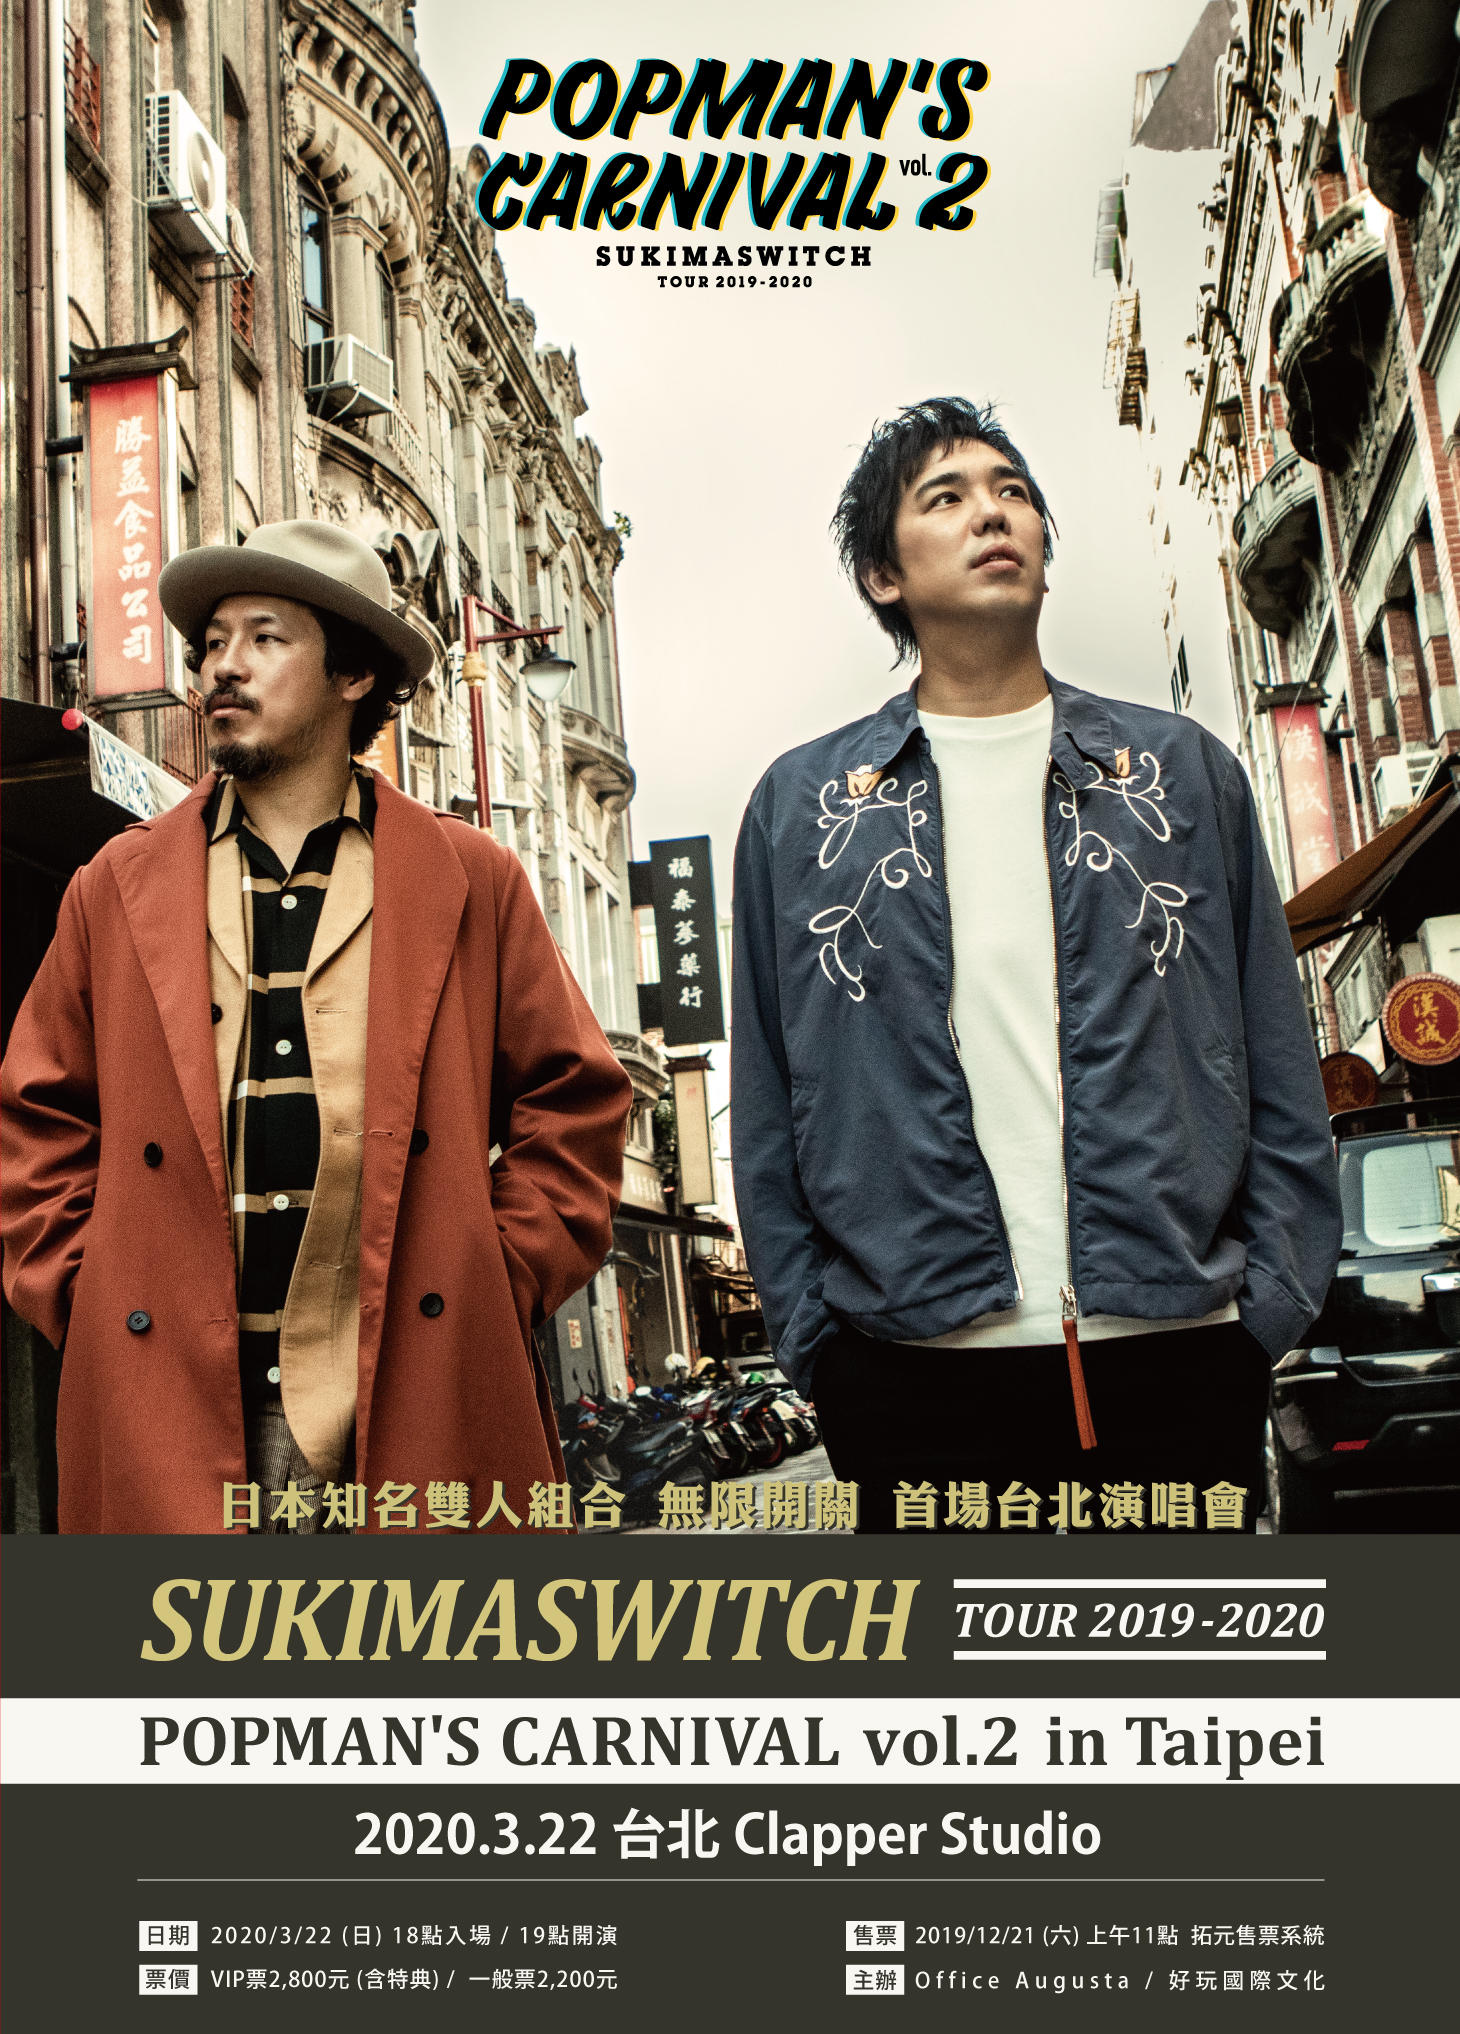 スキマスイッチ、初の海外ワンマンライブ・台北公演の詳細を発表